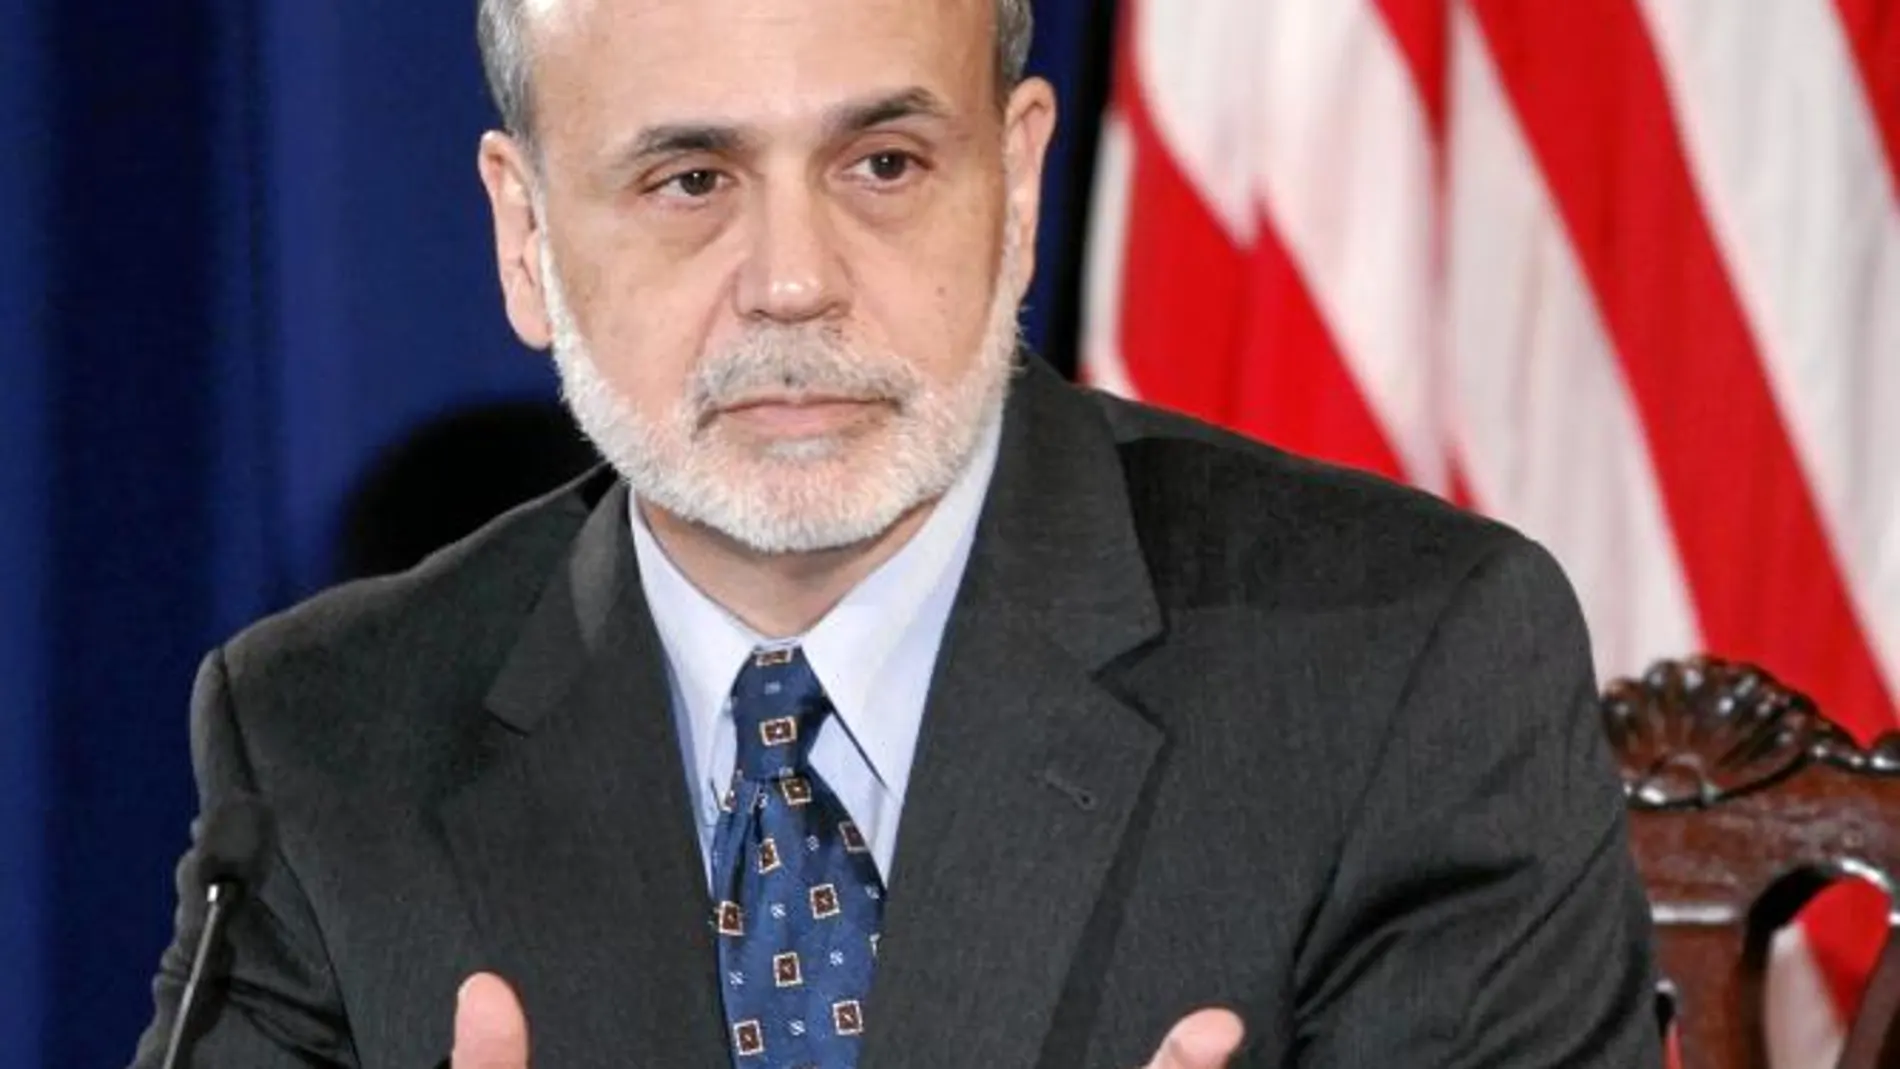 El presidente de la Reserva Federal, Ben Bernanke, insistió ayer en la debilidad del crecimiento de EE UU